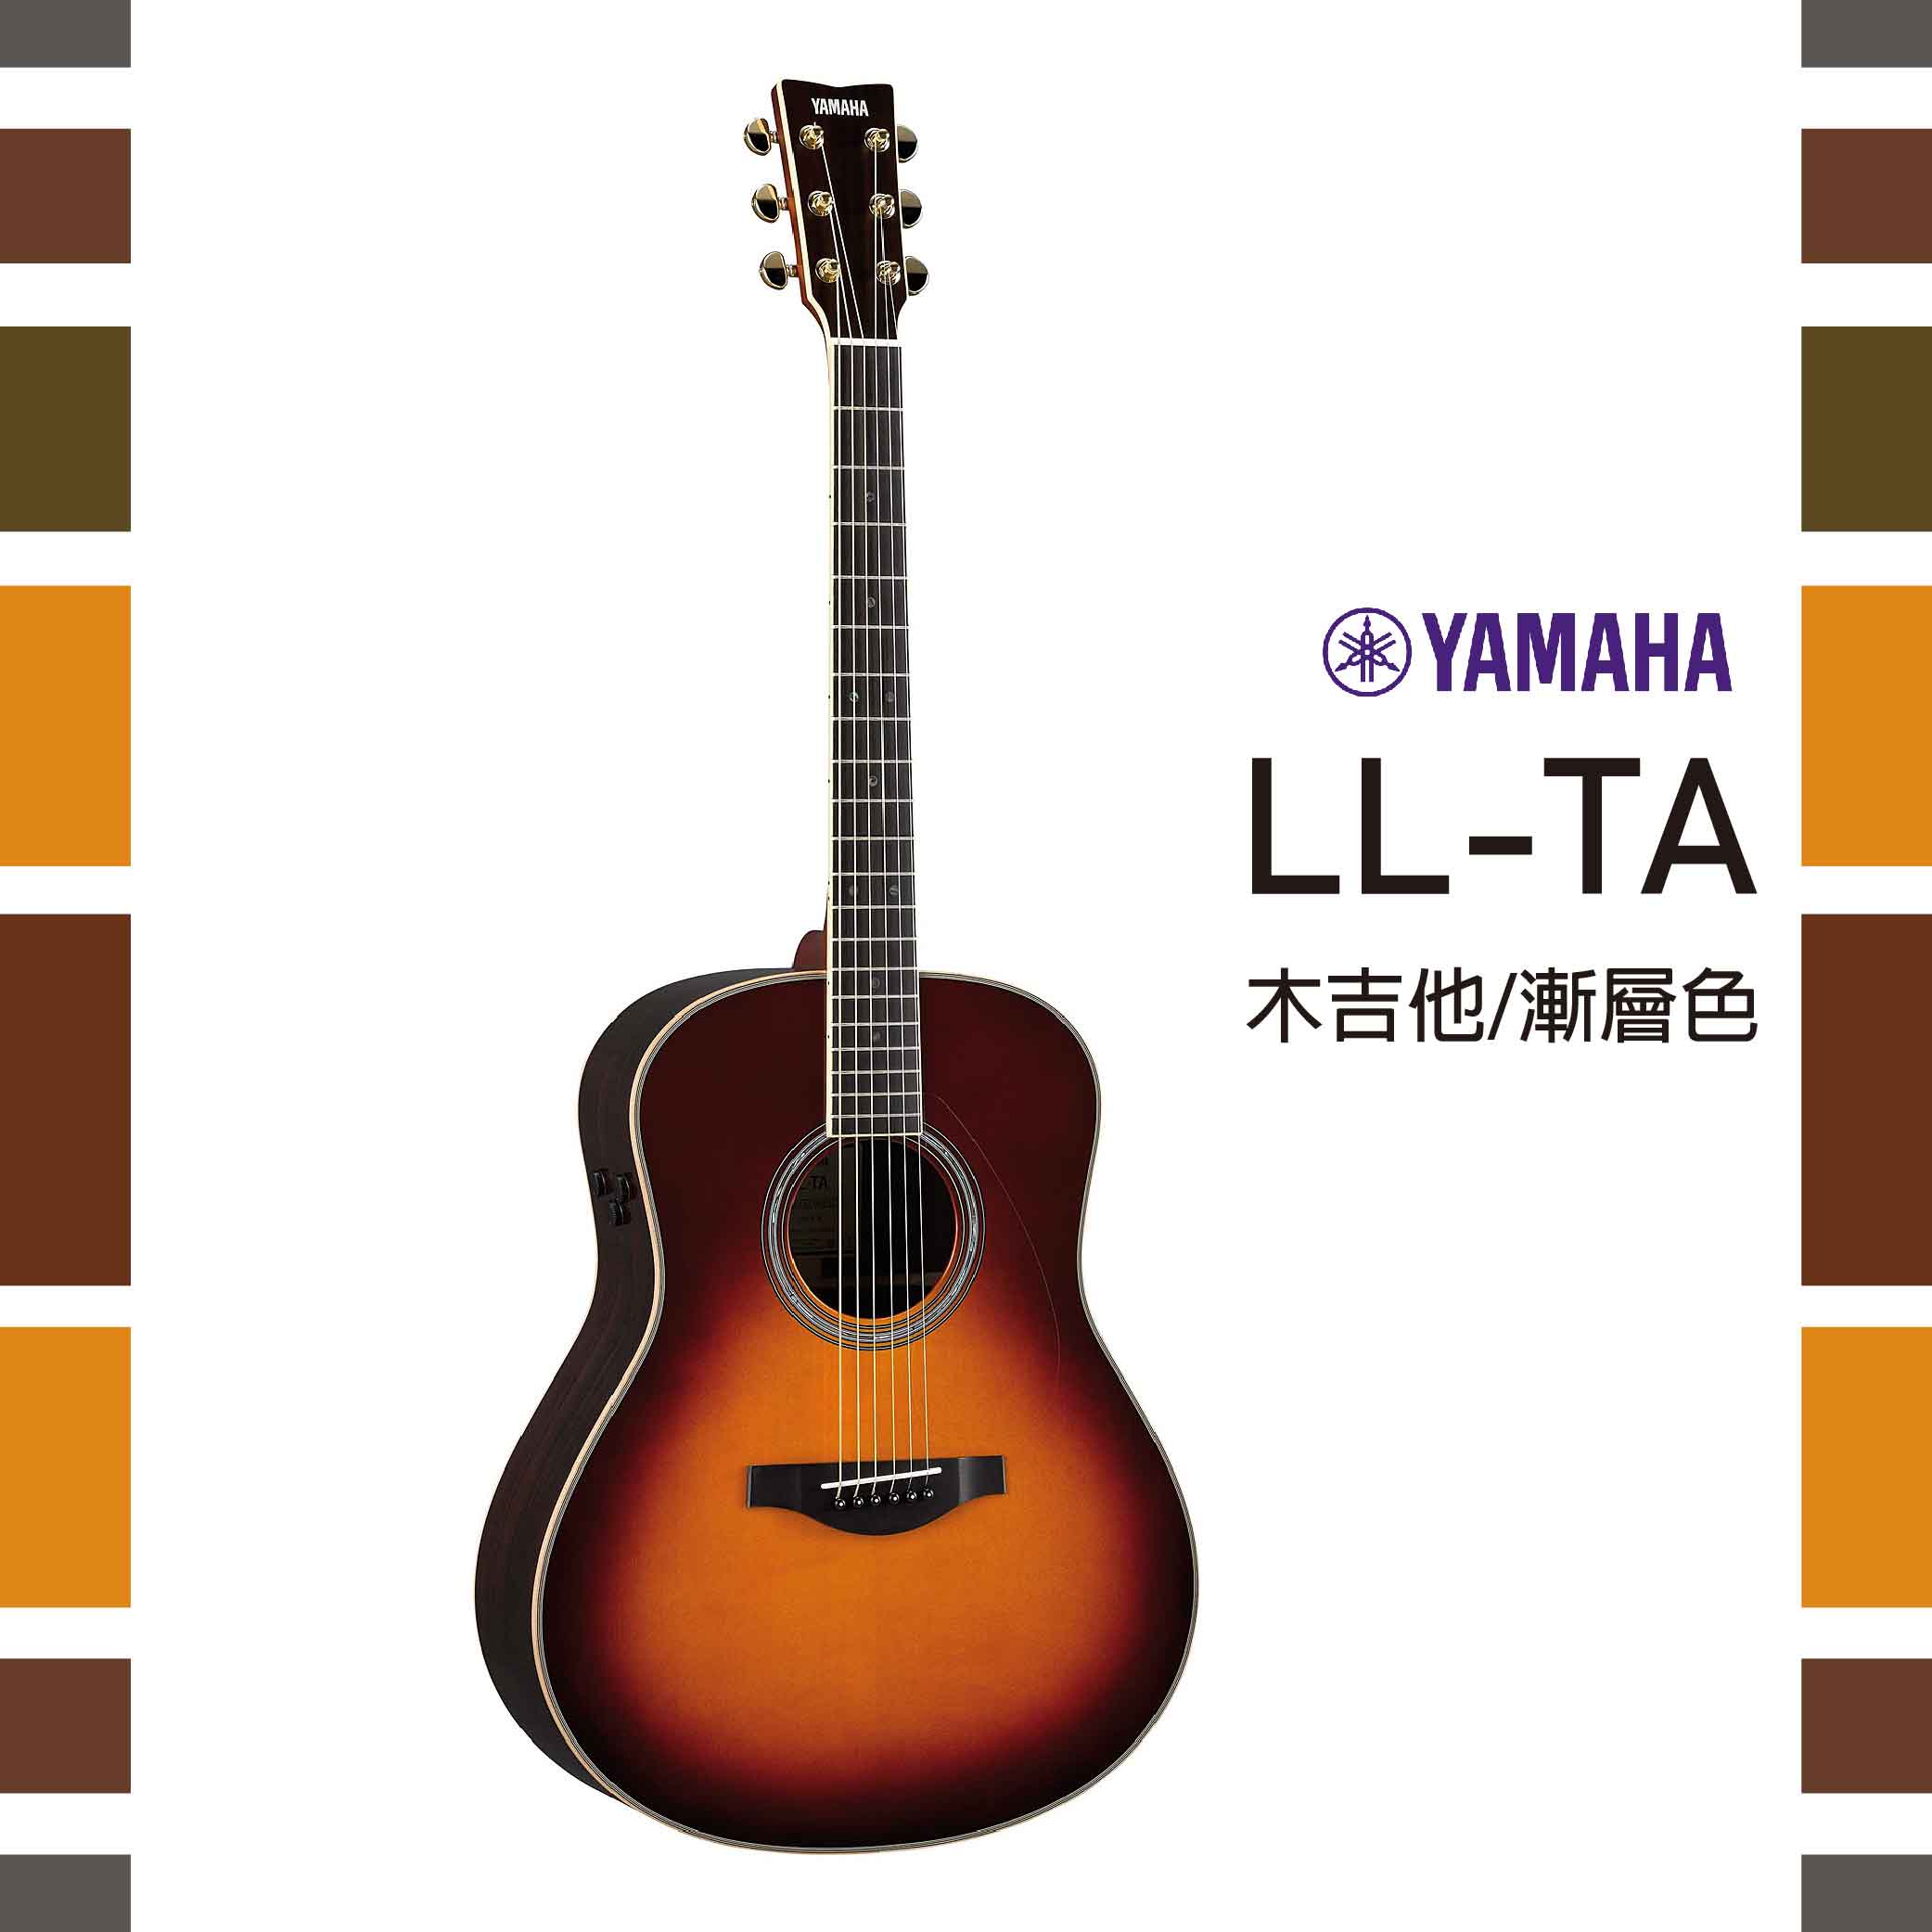 【非凡樂器】Yamaha LL-TA 木吉他 / 公司貨保固 / 漸層色